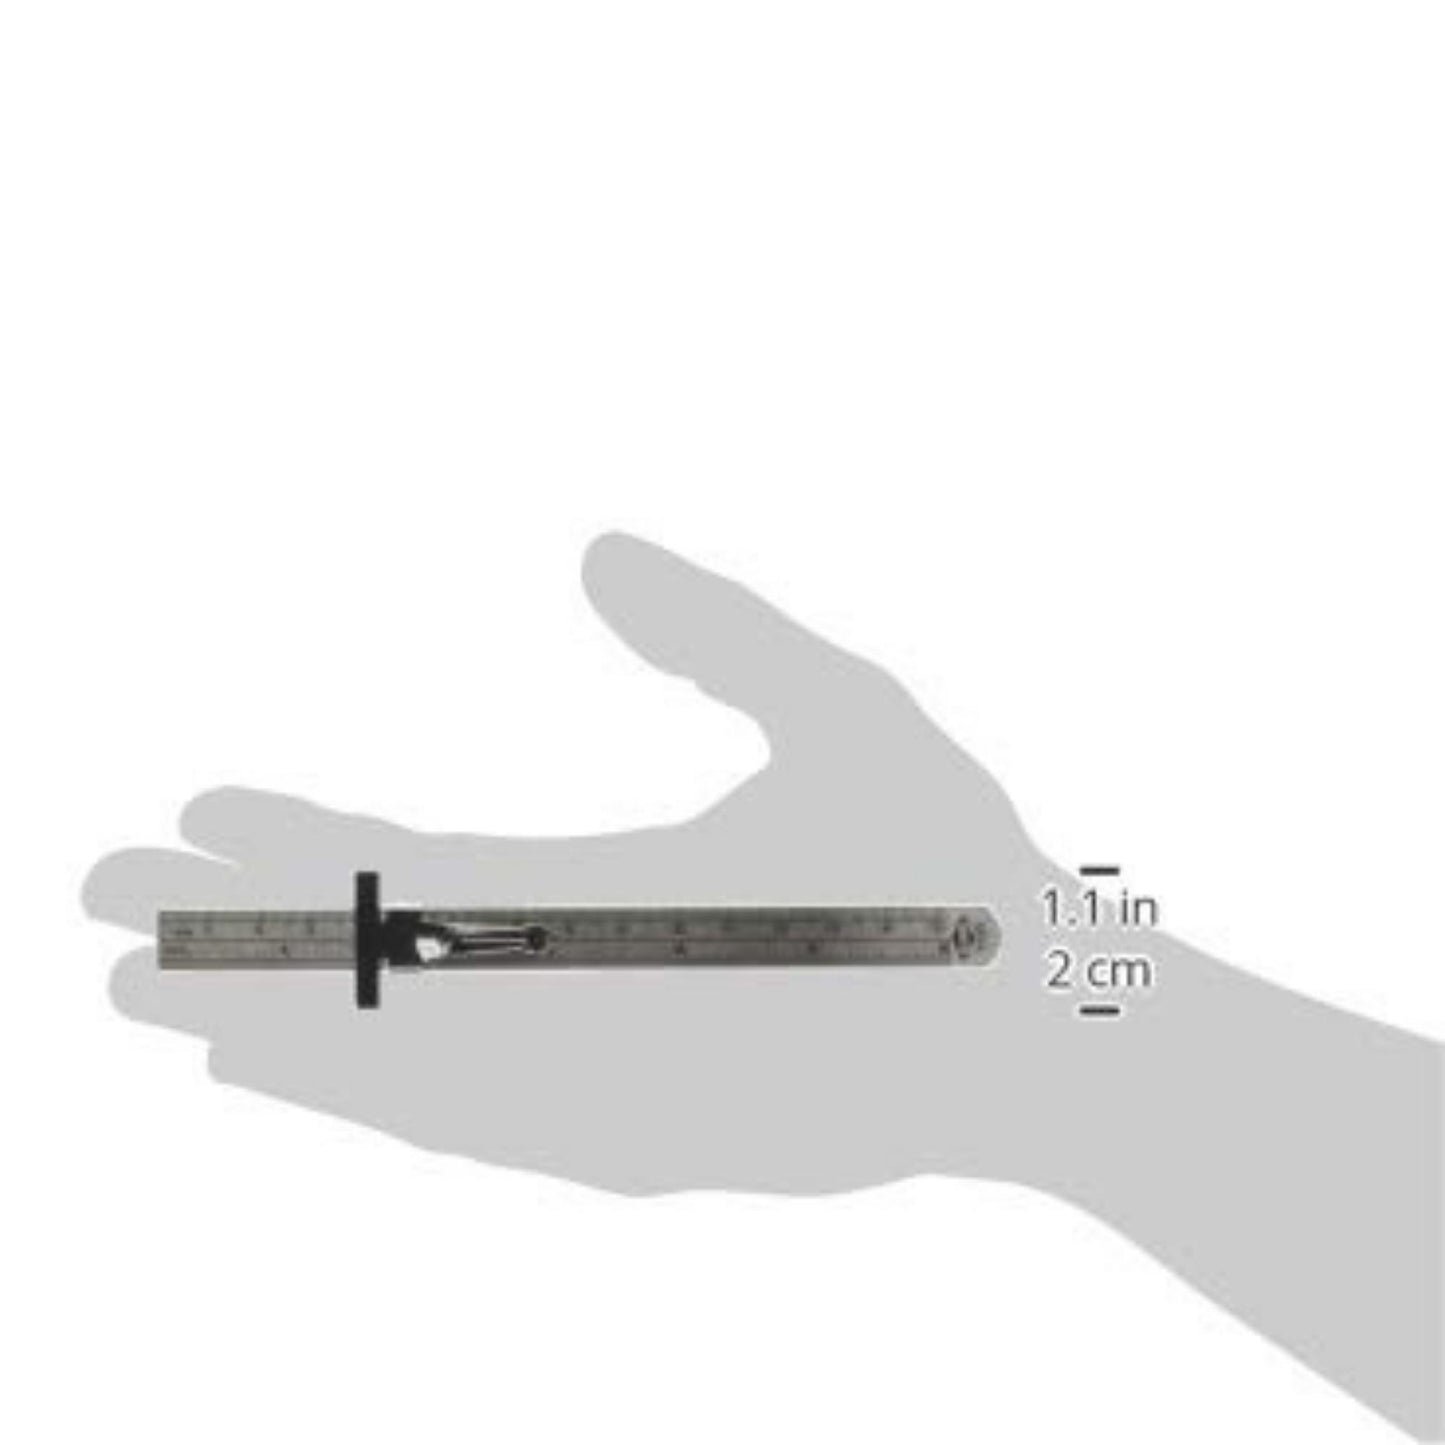 Ruler Millimeter 15cm w/Clip